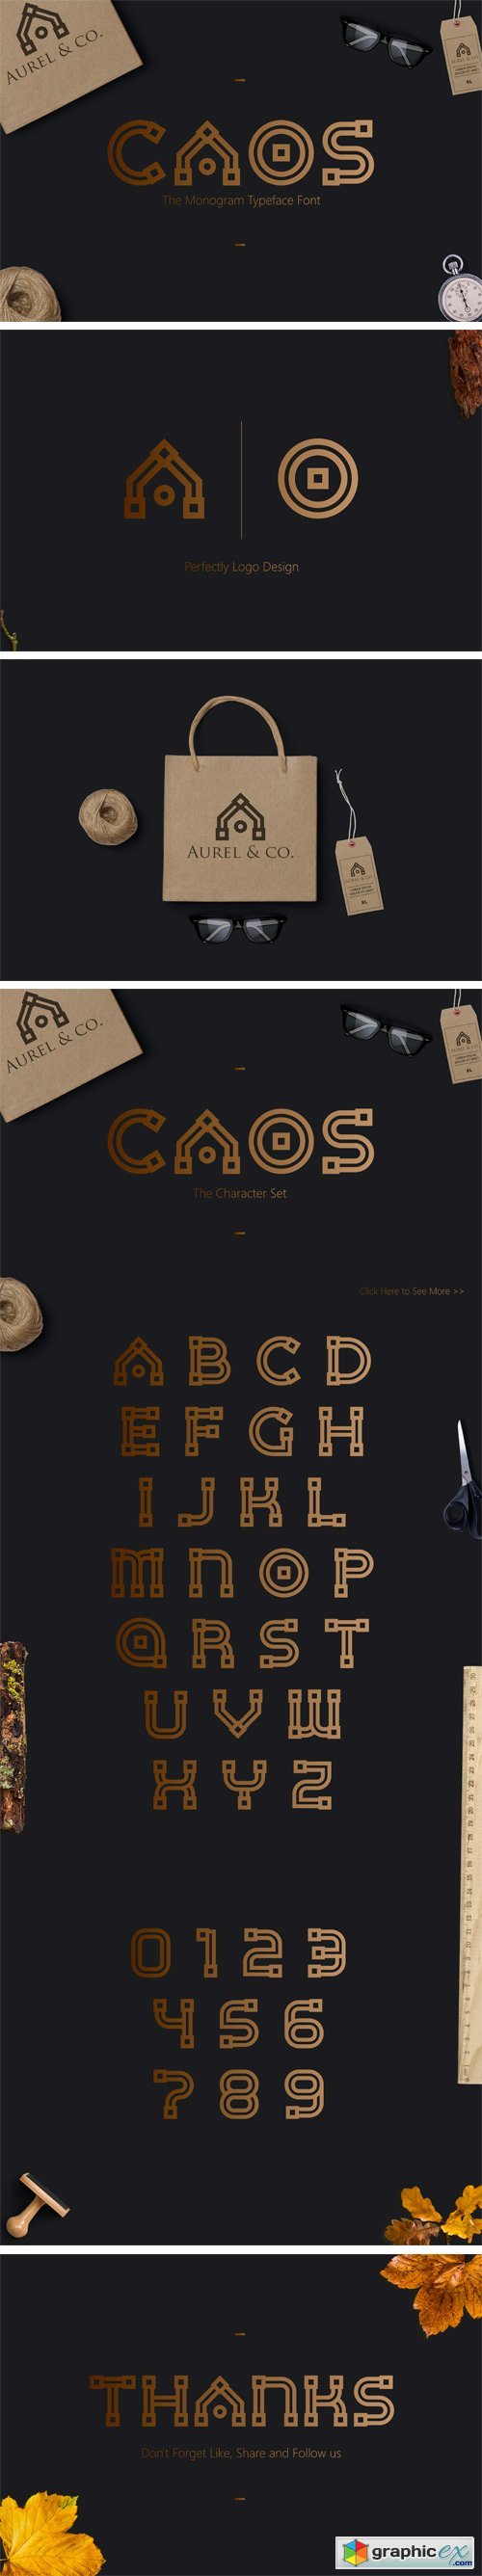 CAOS | The Logo Typeface